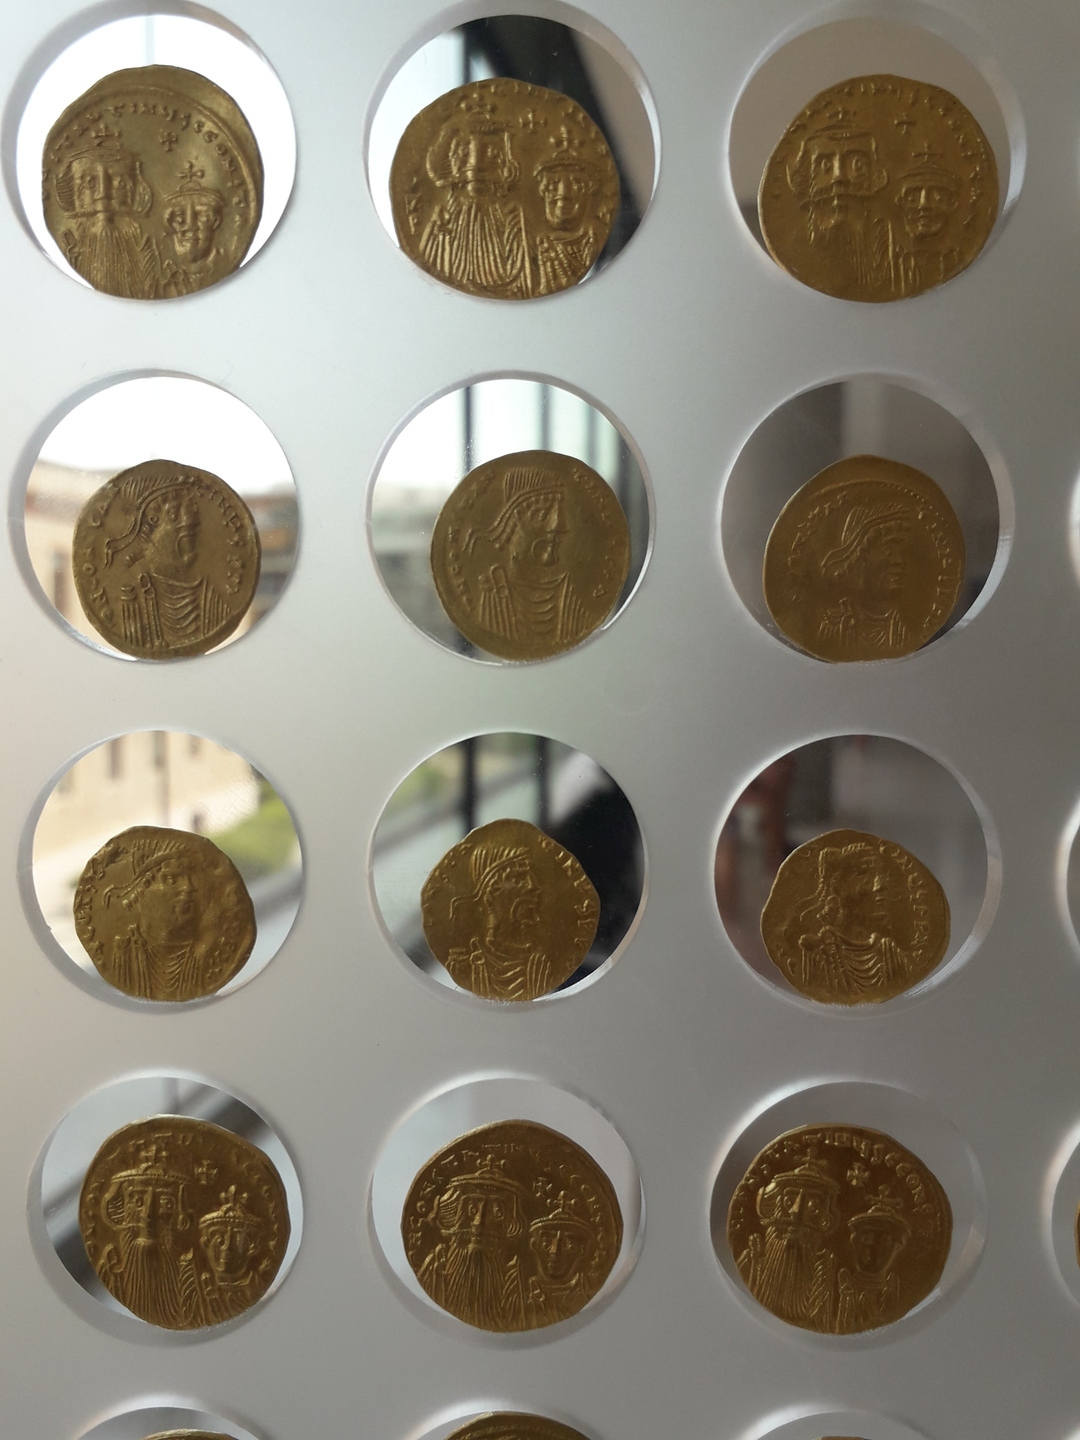 Image 21 : Pièces de monnaies exposées